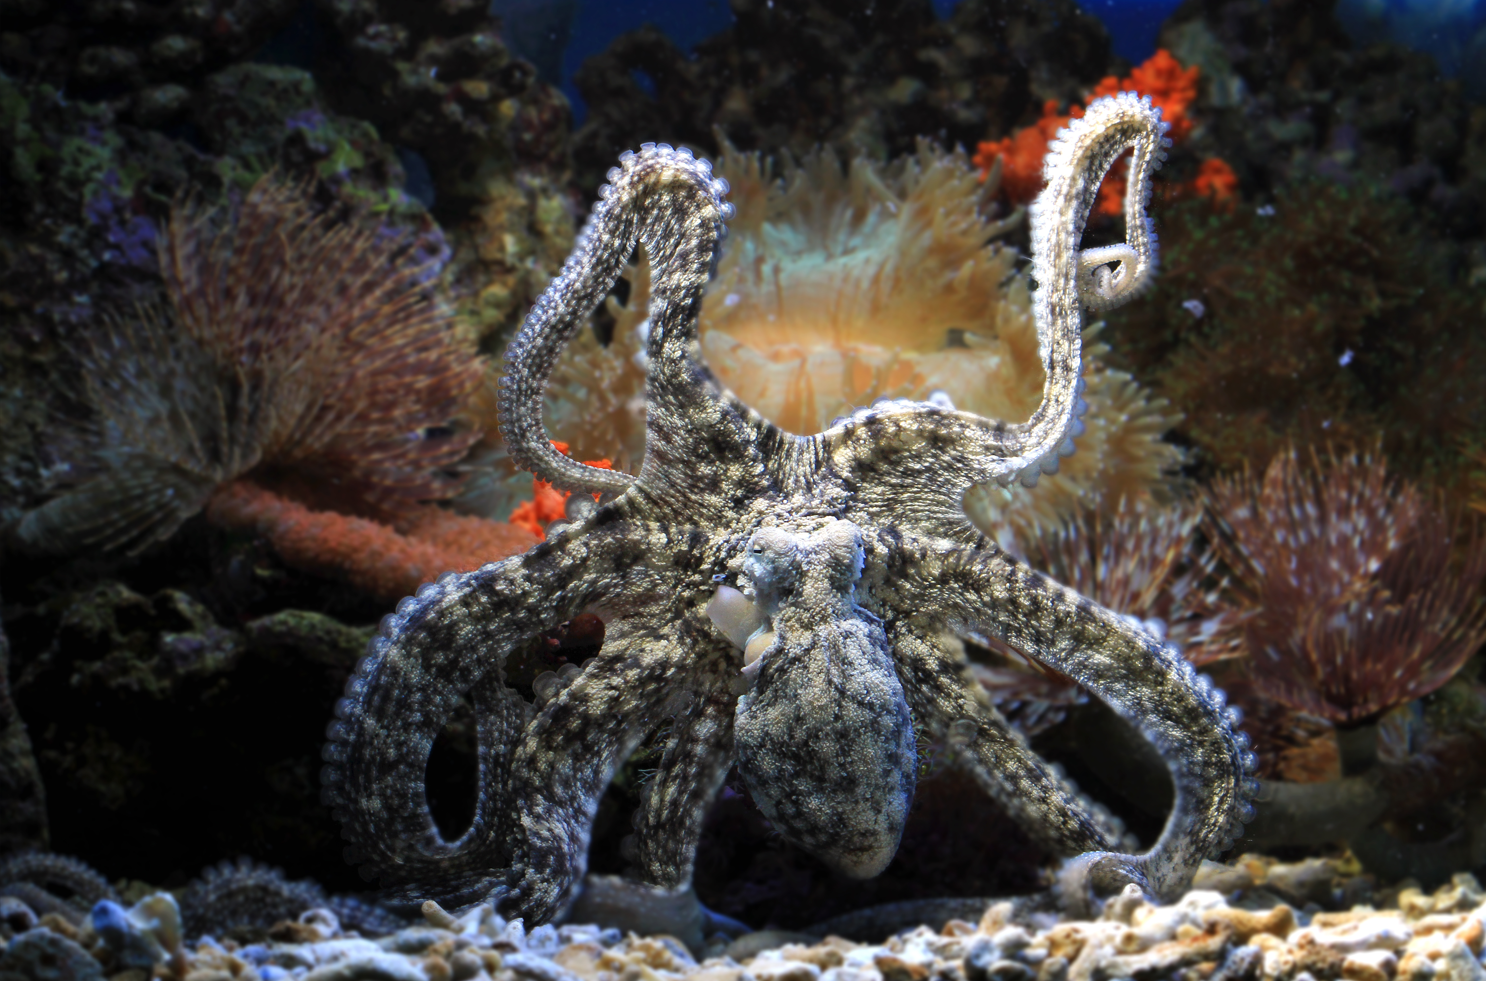 Un nouveau calamar spécialiste du camouflage